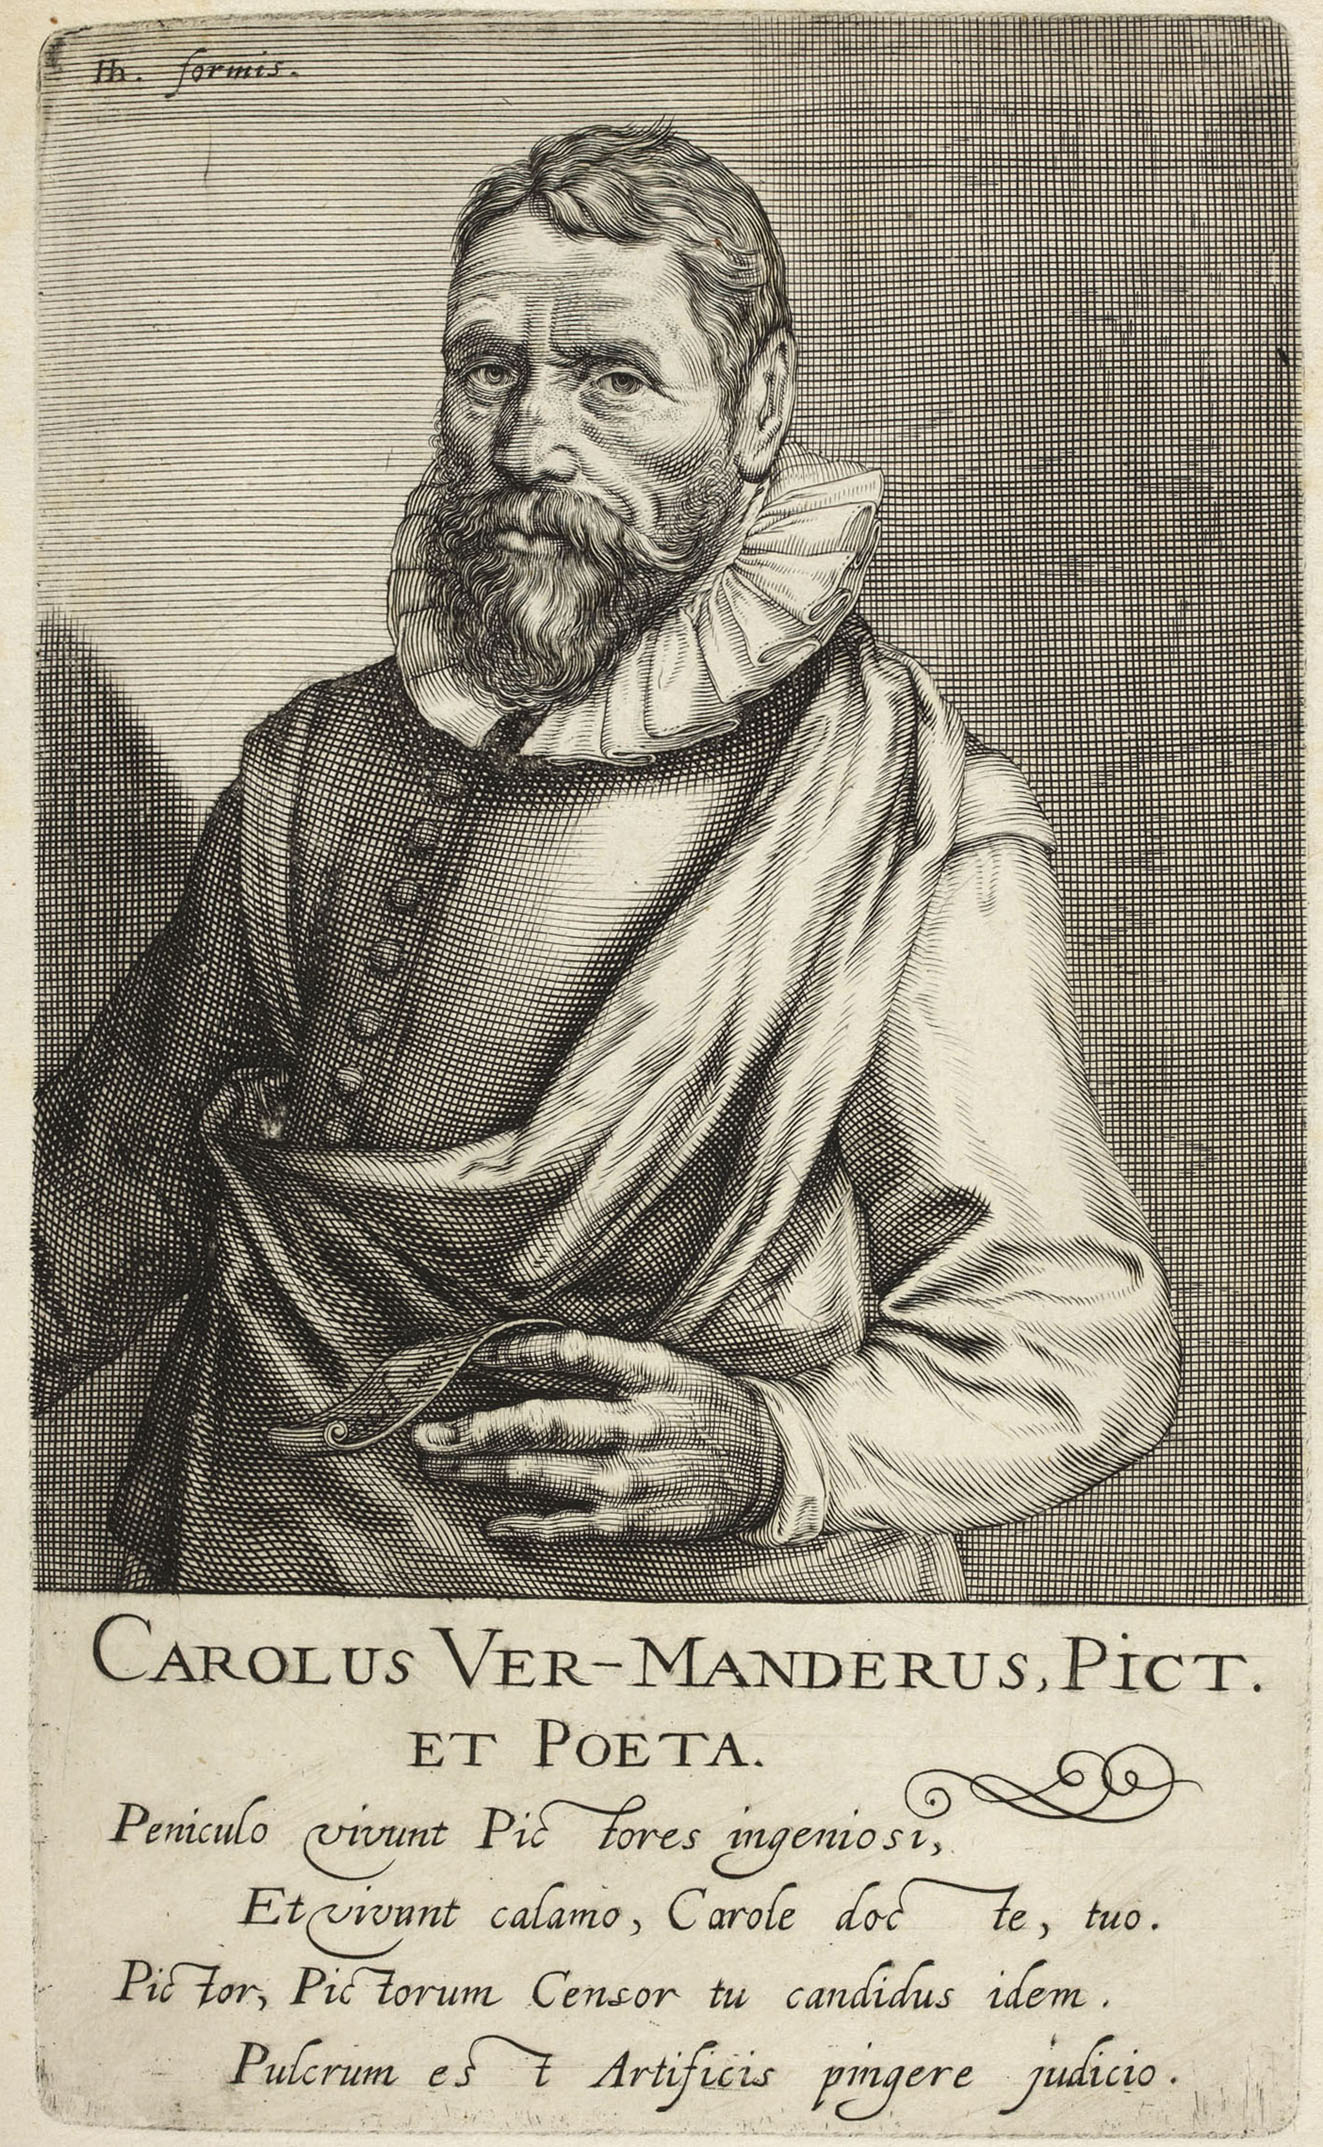 Karel van Mander engraving